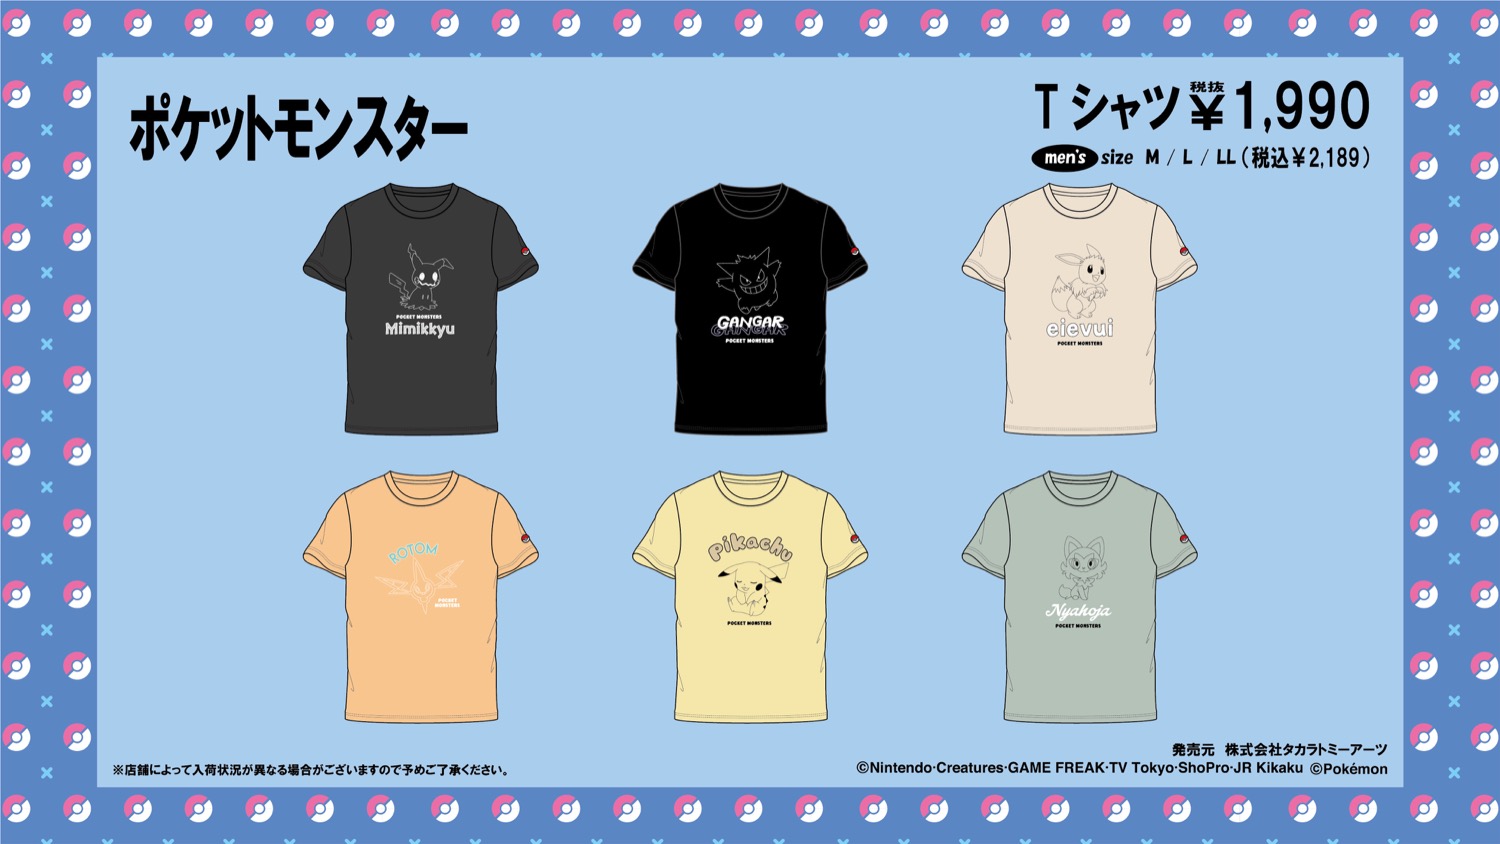 ポケモン × ドンキ 3月16日よりヤドン・コダック等のTシャツが登場!